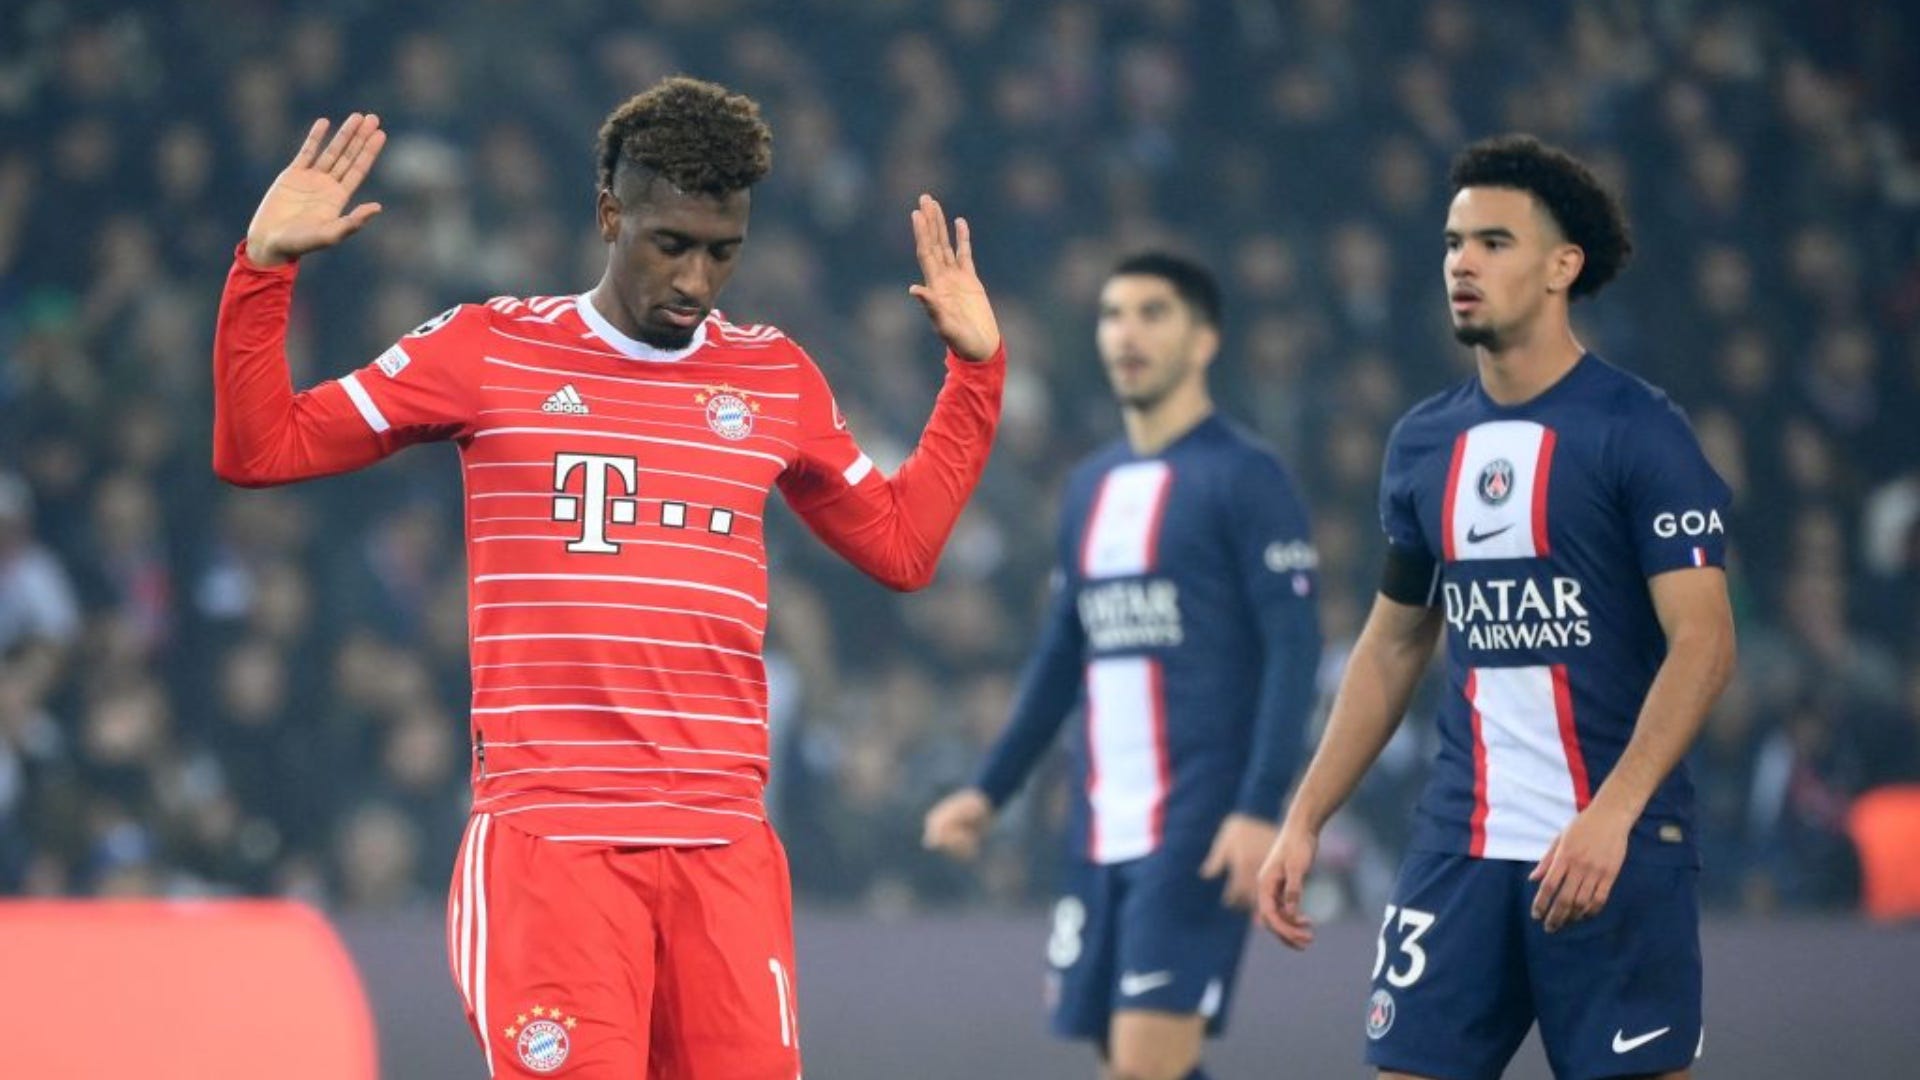 Foot: le PSG jette un froid à Munich en Ligue des champions